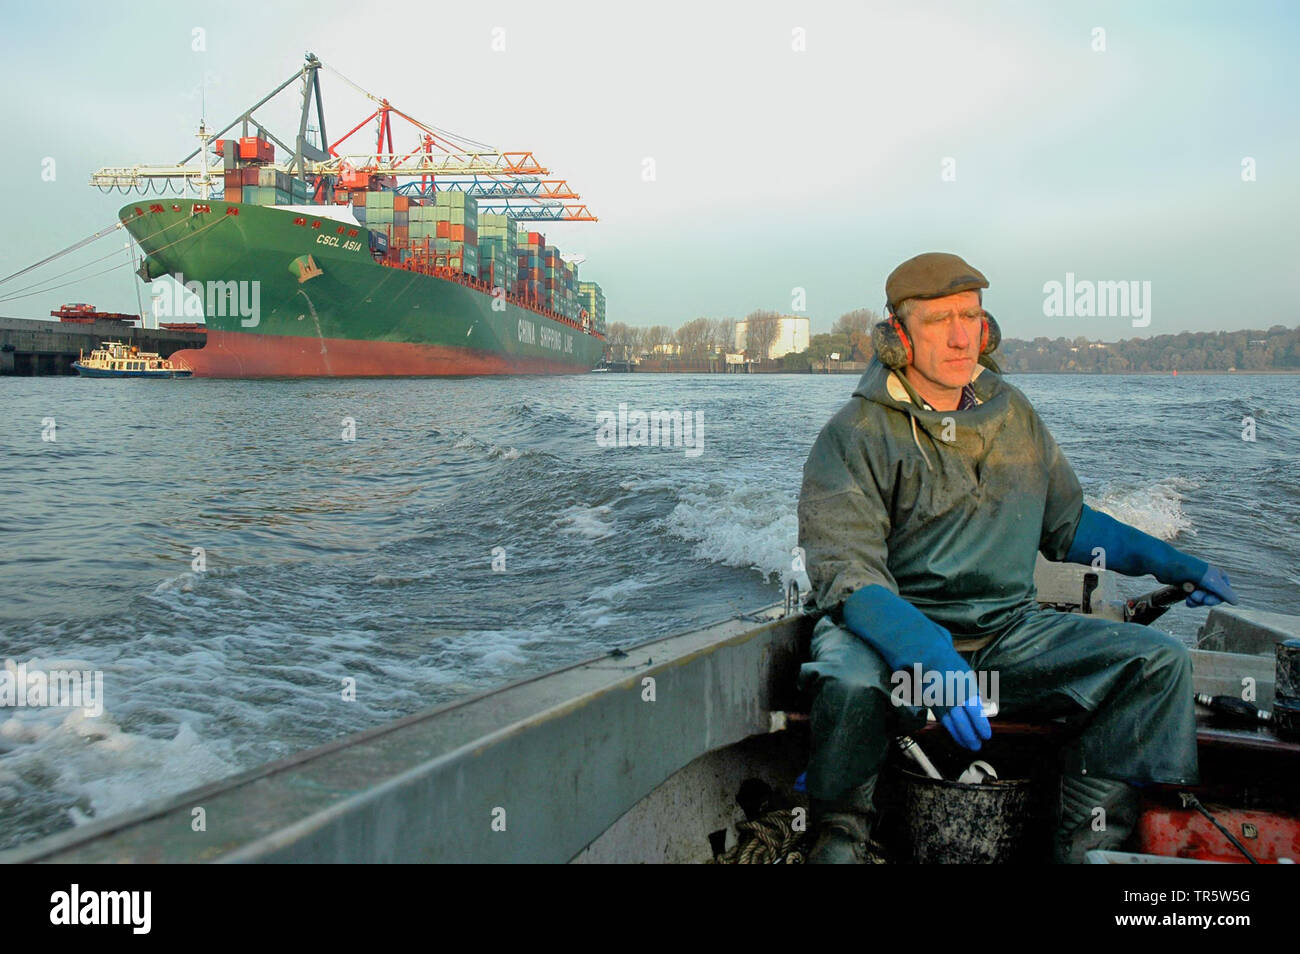 Fischerman dans un bateau de pêche sur la rivière de l'Elbe dans le port de Hambourg, Allemagne, Hambourg Banque D'Images